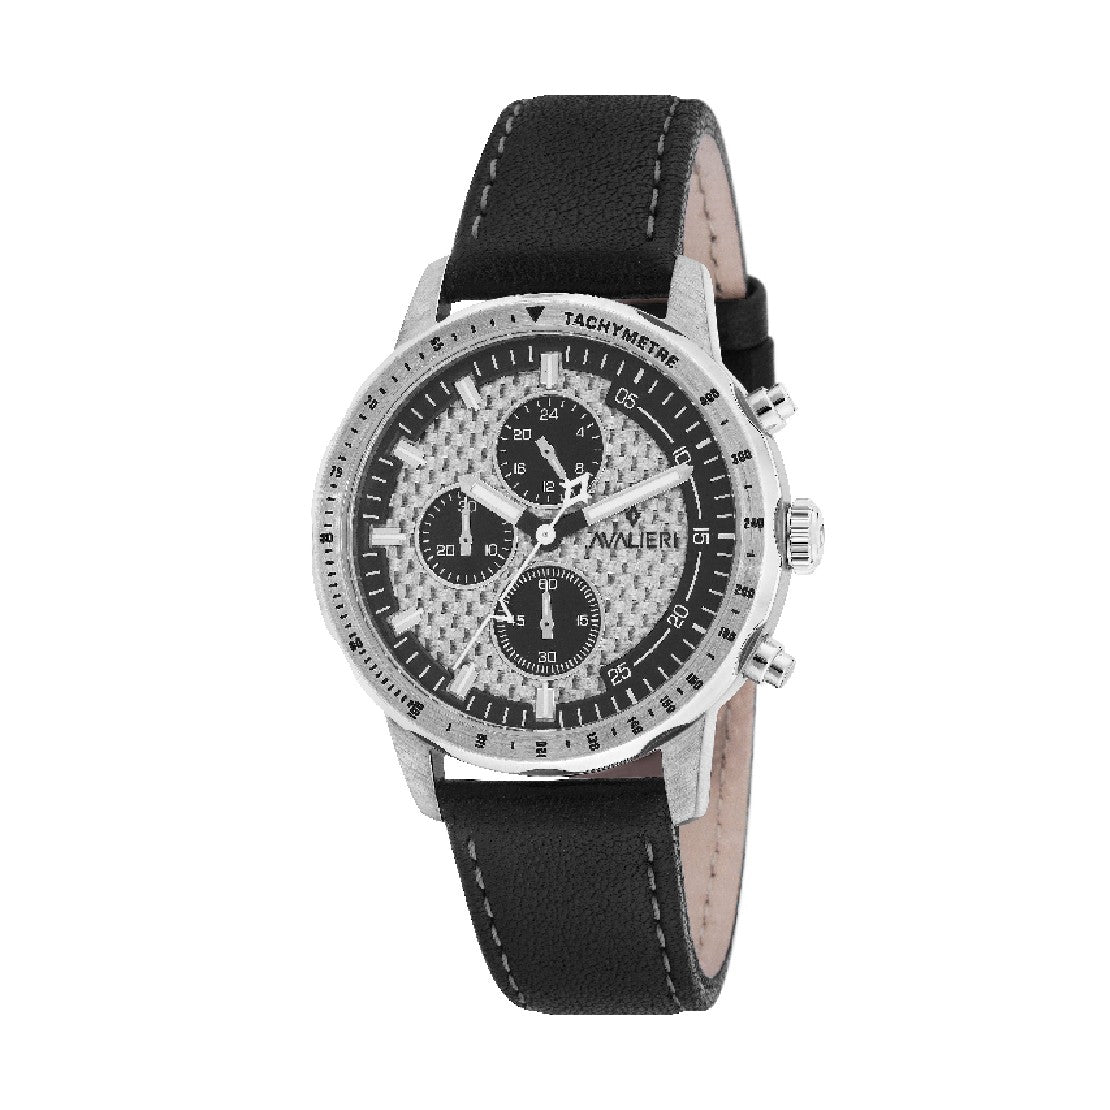 Avalieri Men's Quartz Watch, Silver and Black Dial - AV-2240B